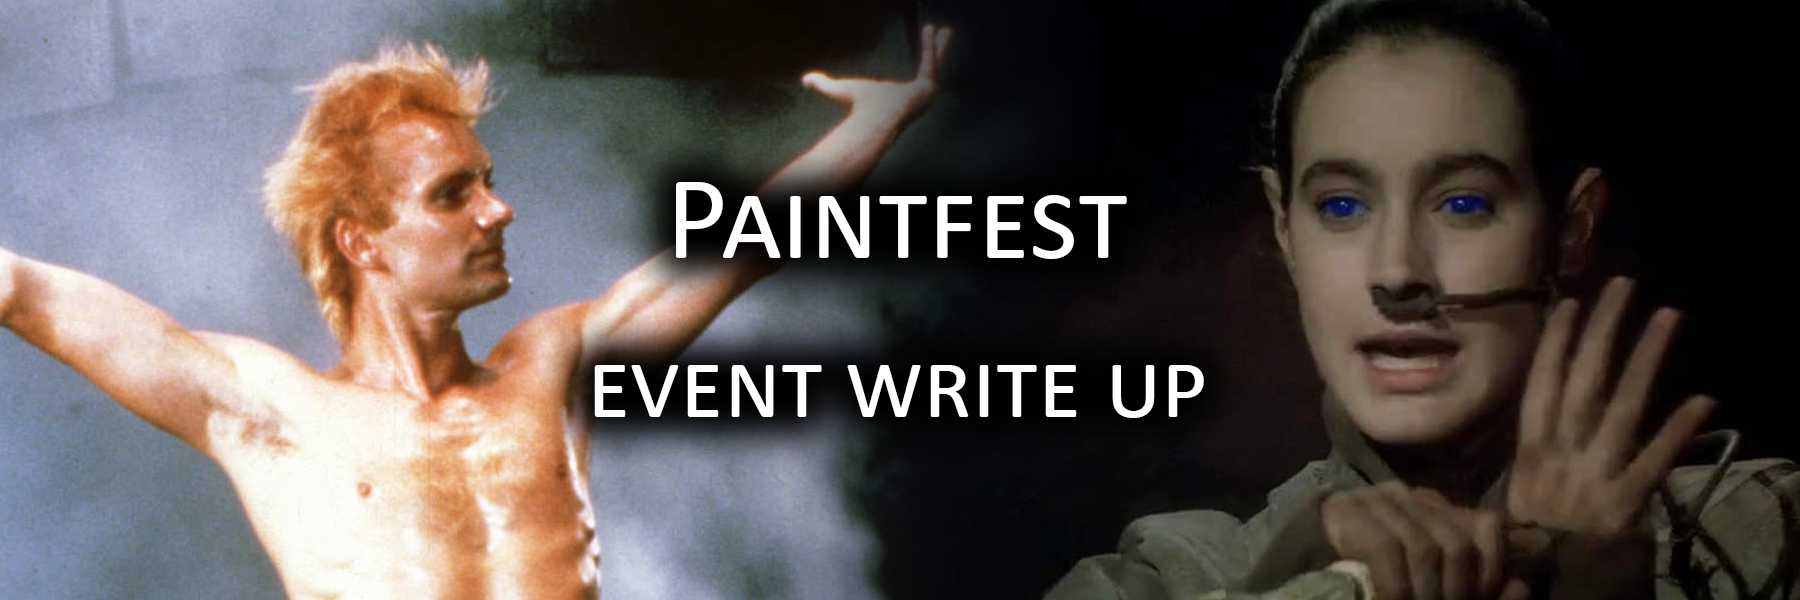 Paintfest writeup